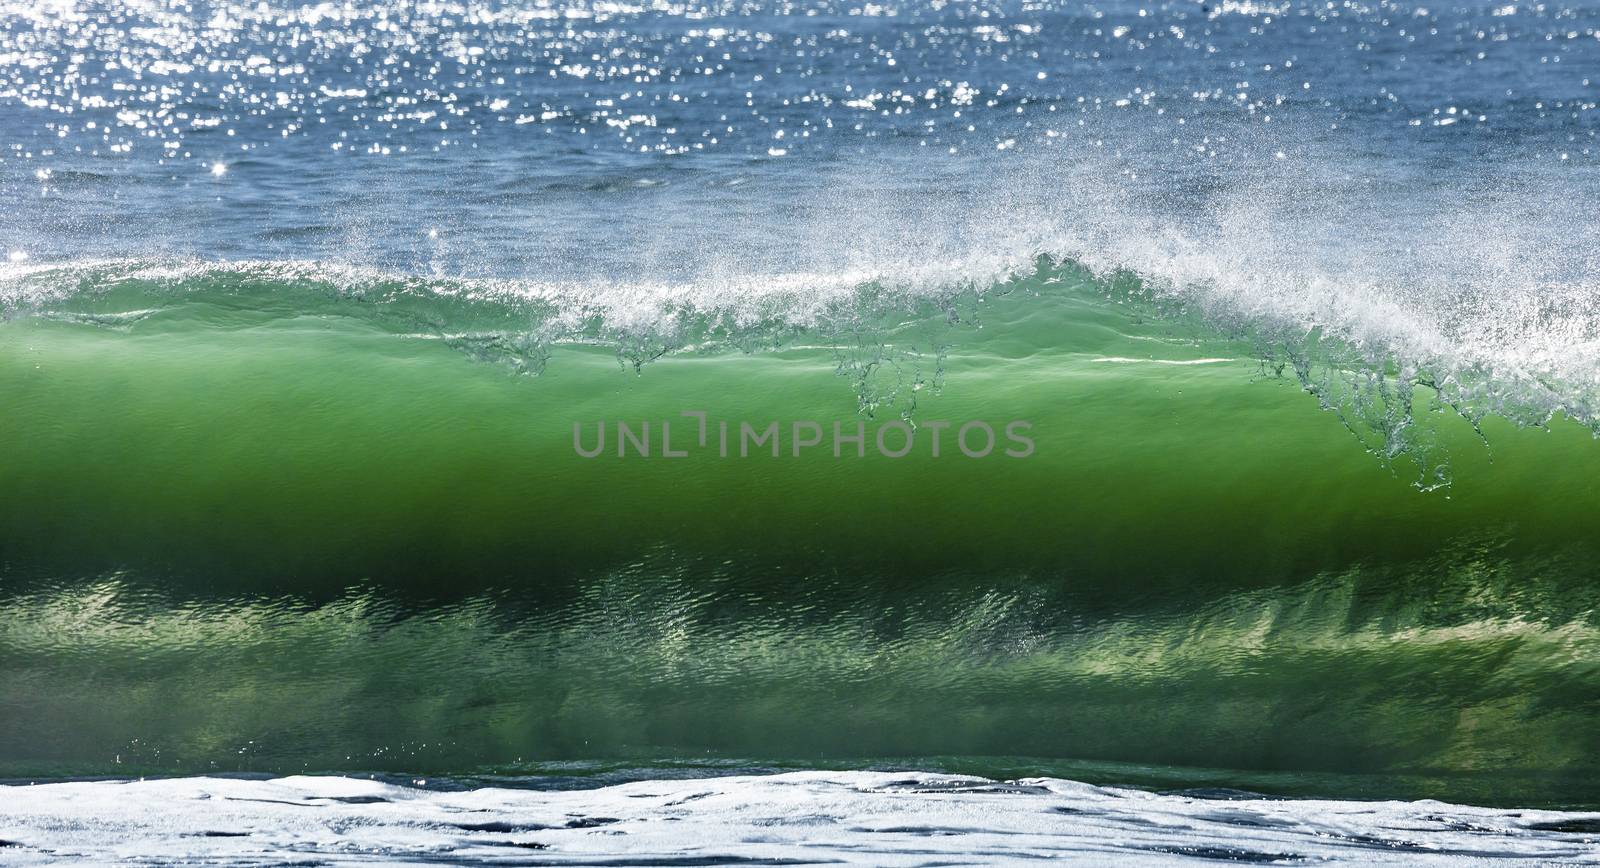 Big wave break spray in the Pacific Ocean by hanusst